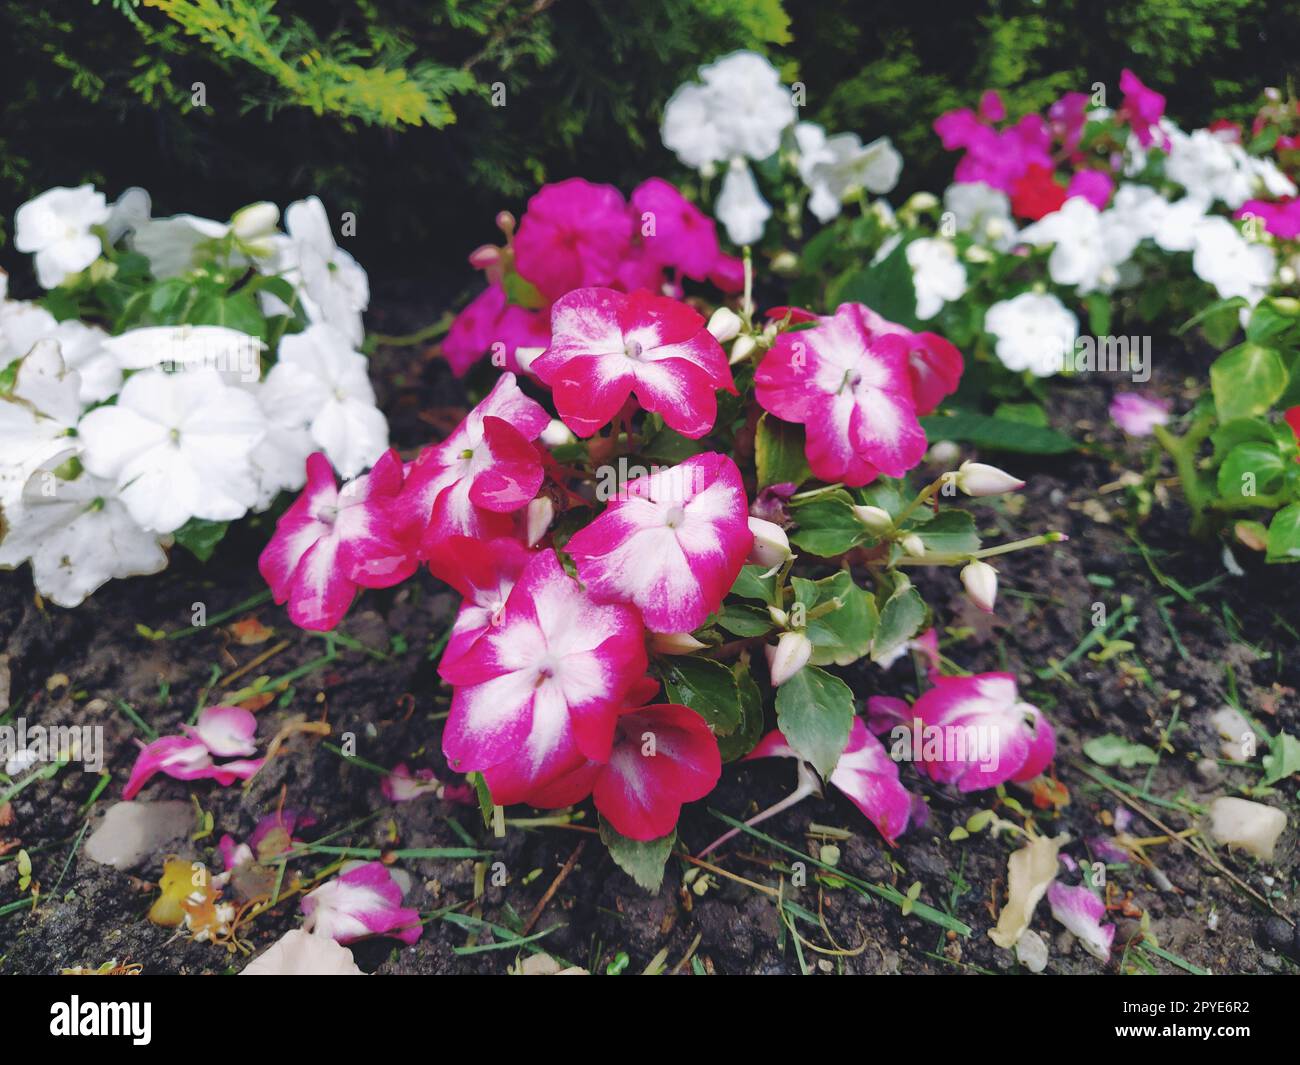 Le pétunia est un genre de plantes herbacées ou semi-arbustes vivaces de la famille des Solanacées. Variété ornementale cultivée comme jardin annuel, pétunia hybrida ou pétunia. Fleurs rayées blanches et roses Banque D'Images